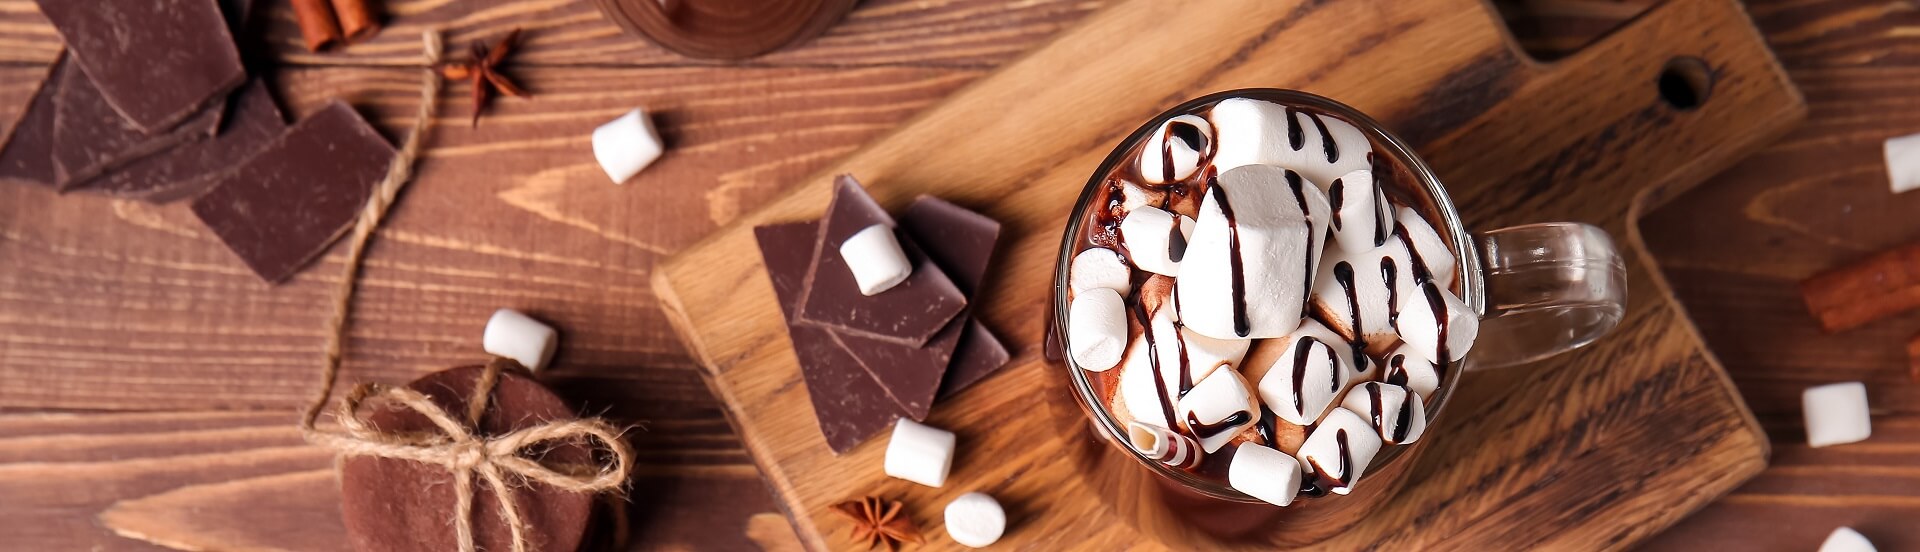 Sicht von Oben auf ein Glas heiße Schokolade, die mit vielen Marshmellows geschmückt ist und auf einem HolzBrett serviert wird.